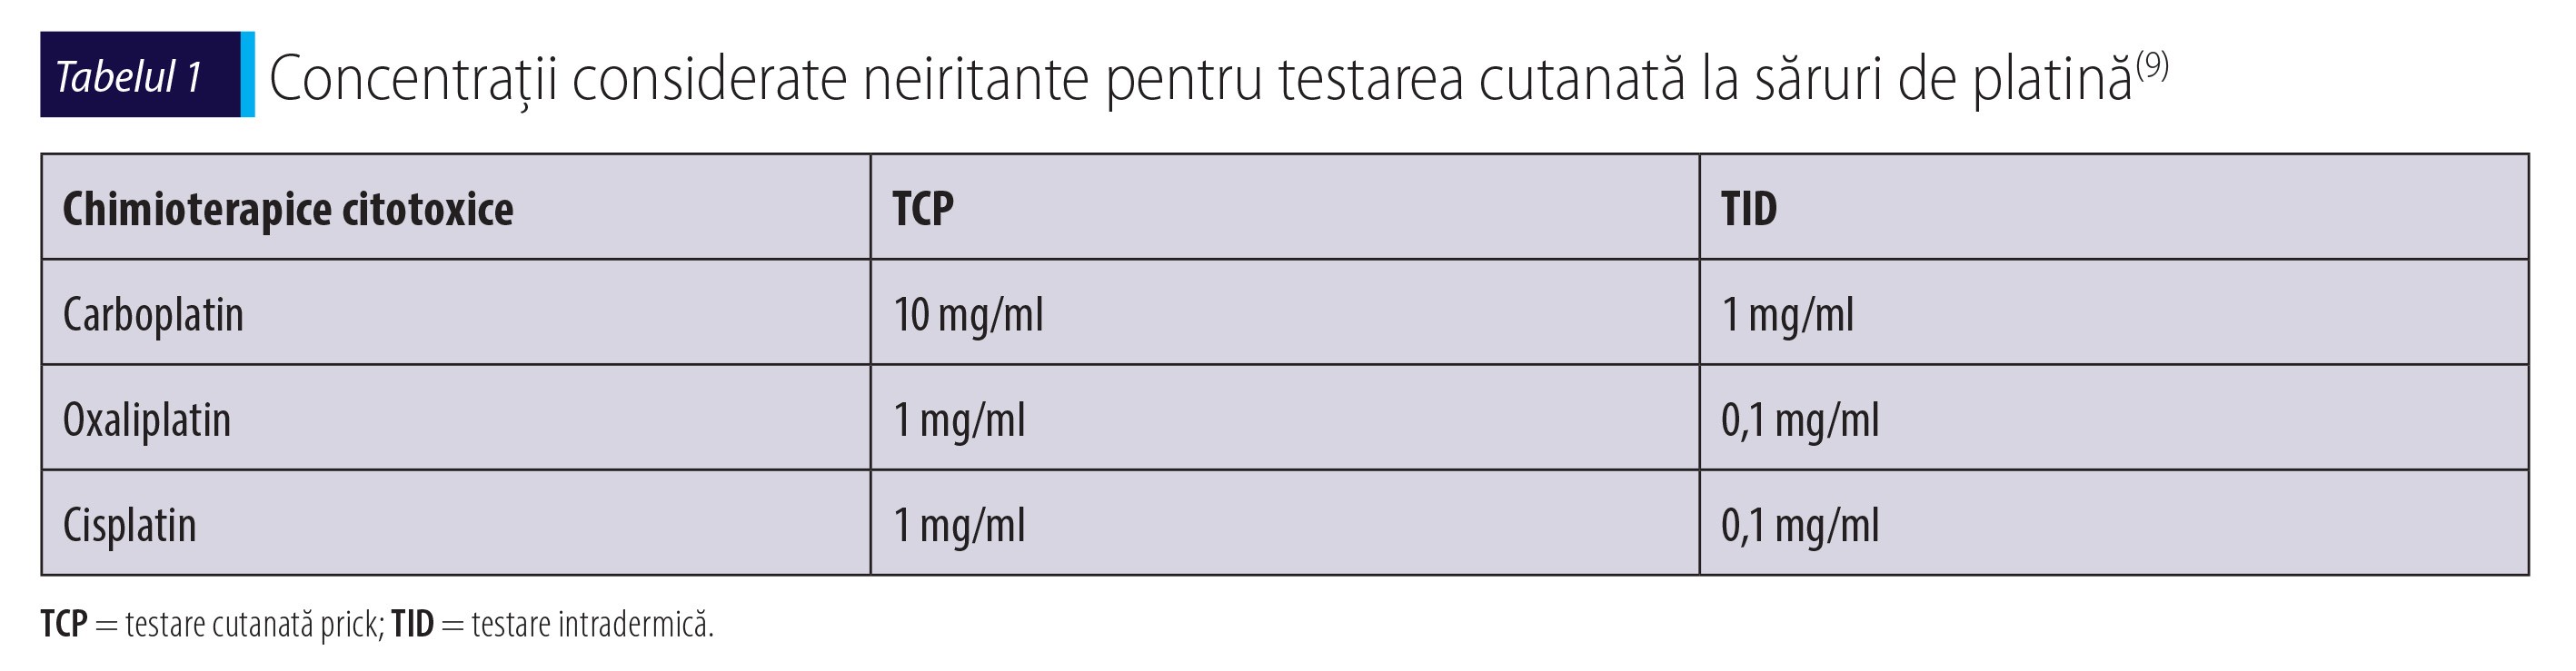 Tabelul 1 Concentrații considerate neiritante pentru testarea cutanată la săruri de platină(9)